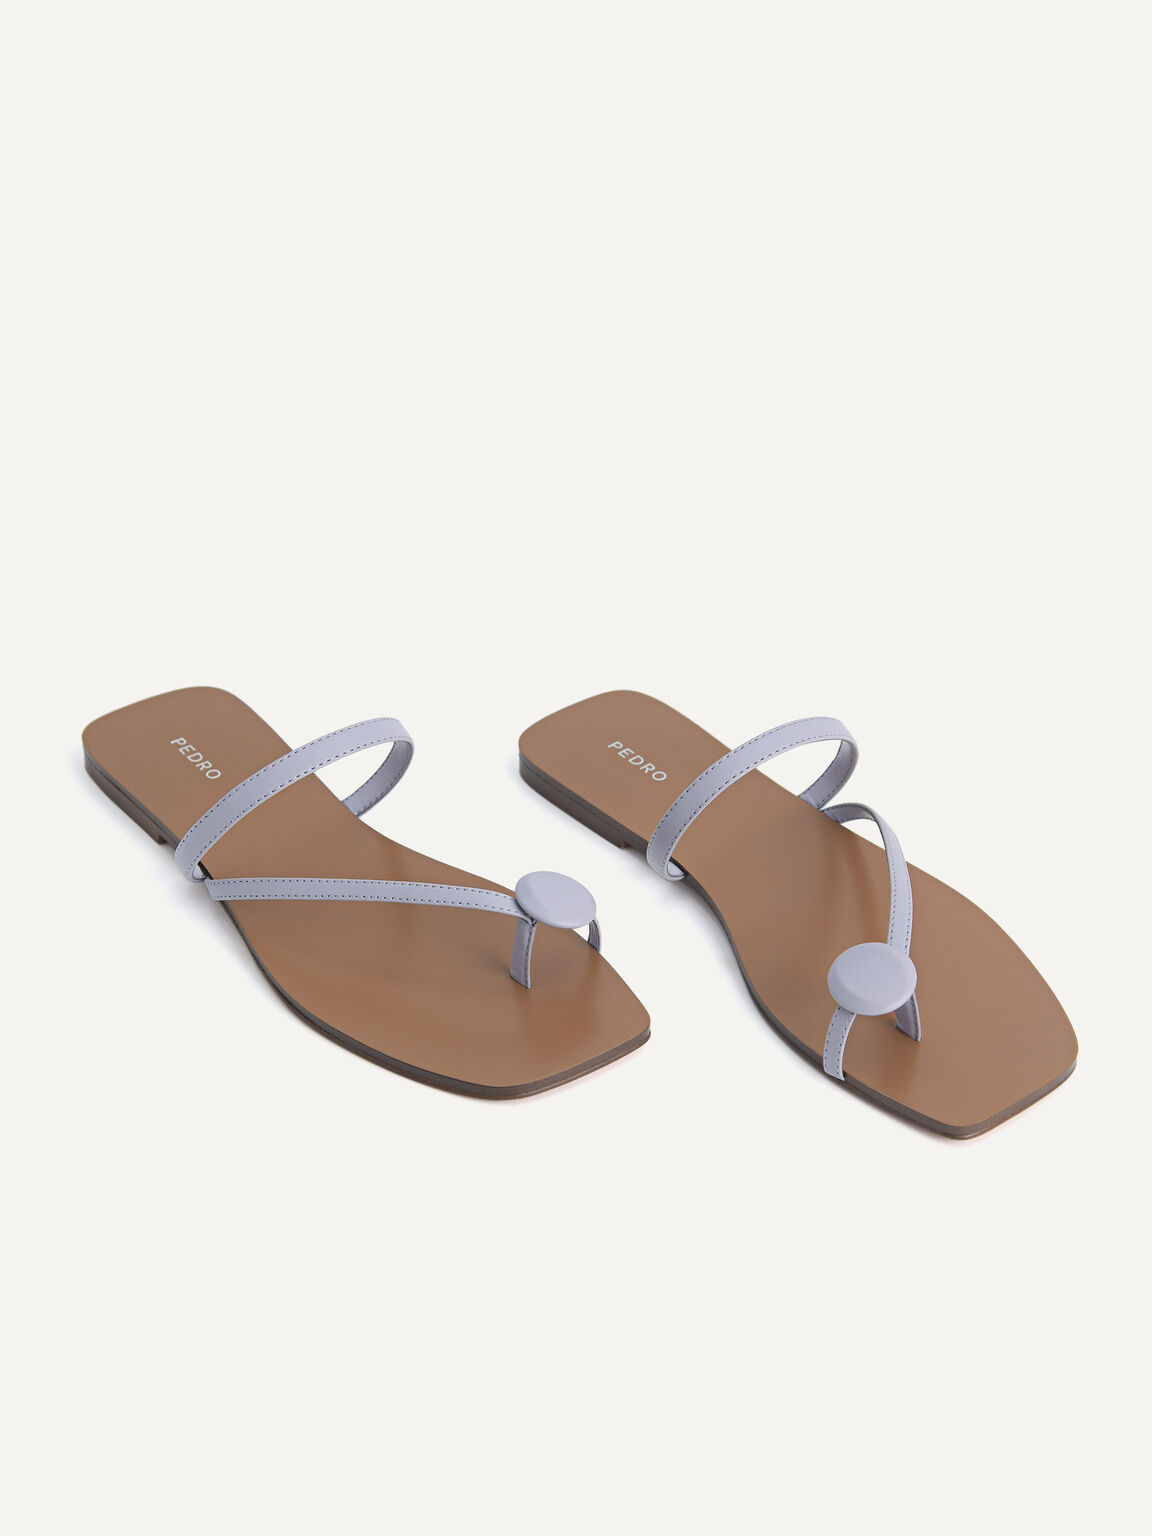 Toe Loop Sandals, Lilac